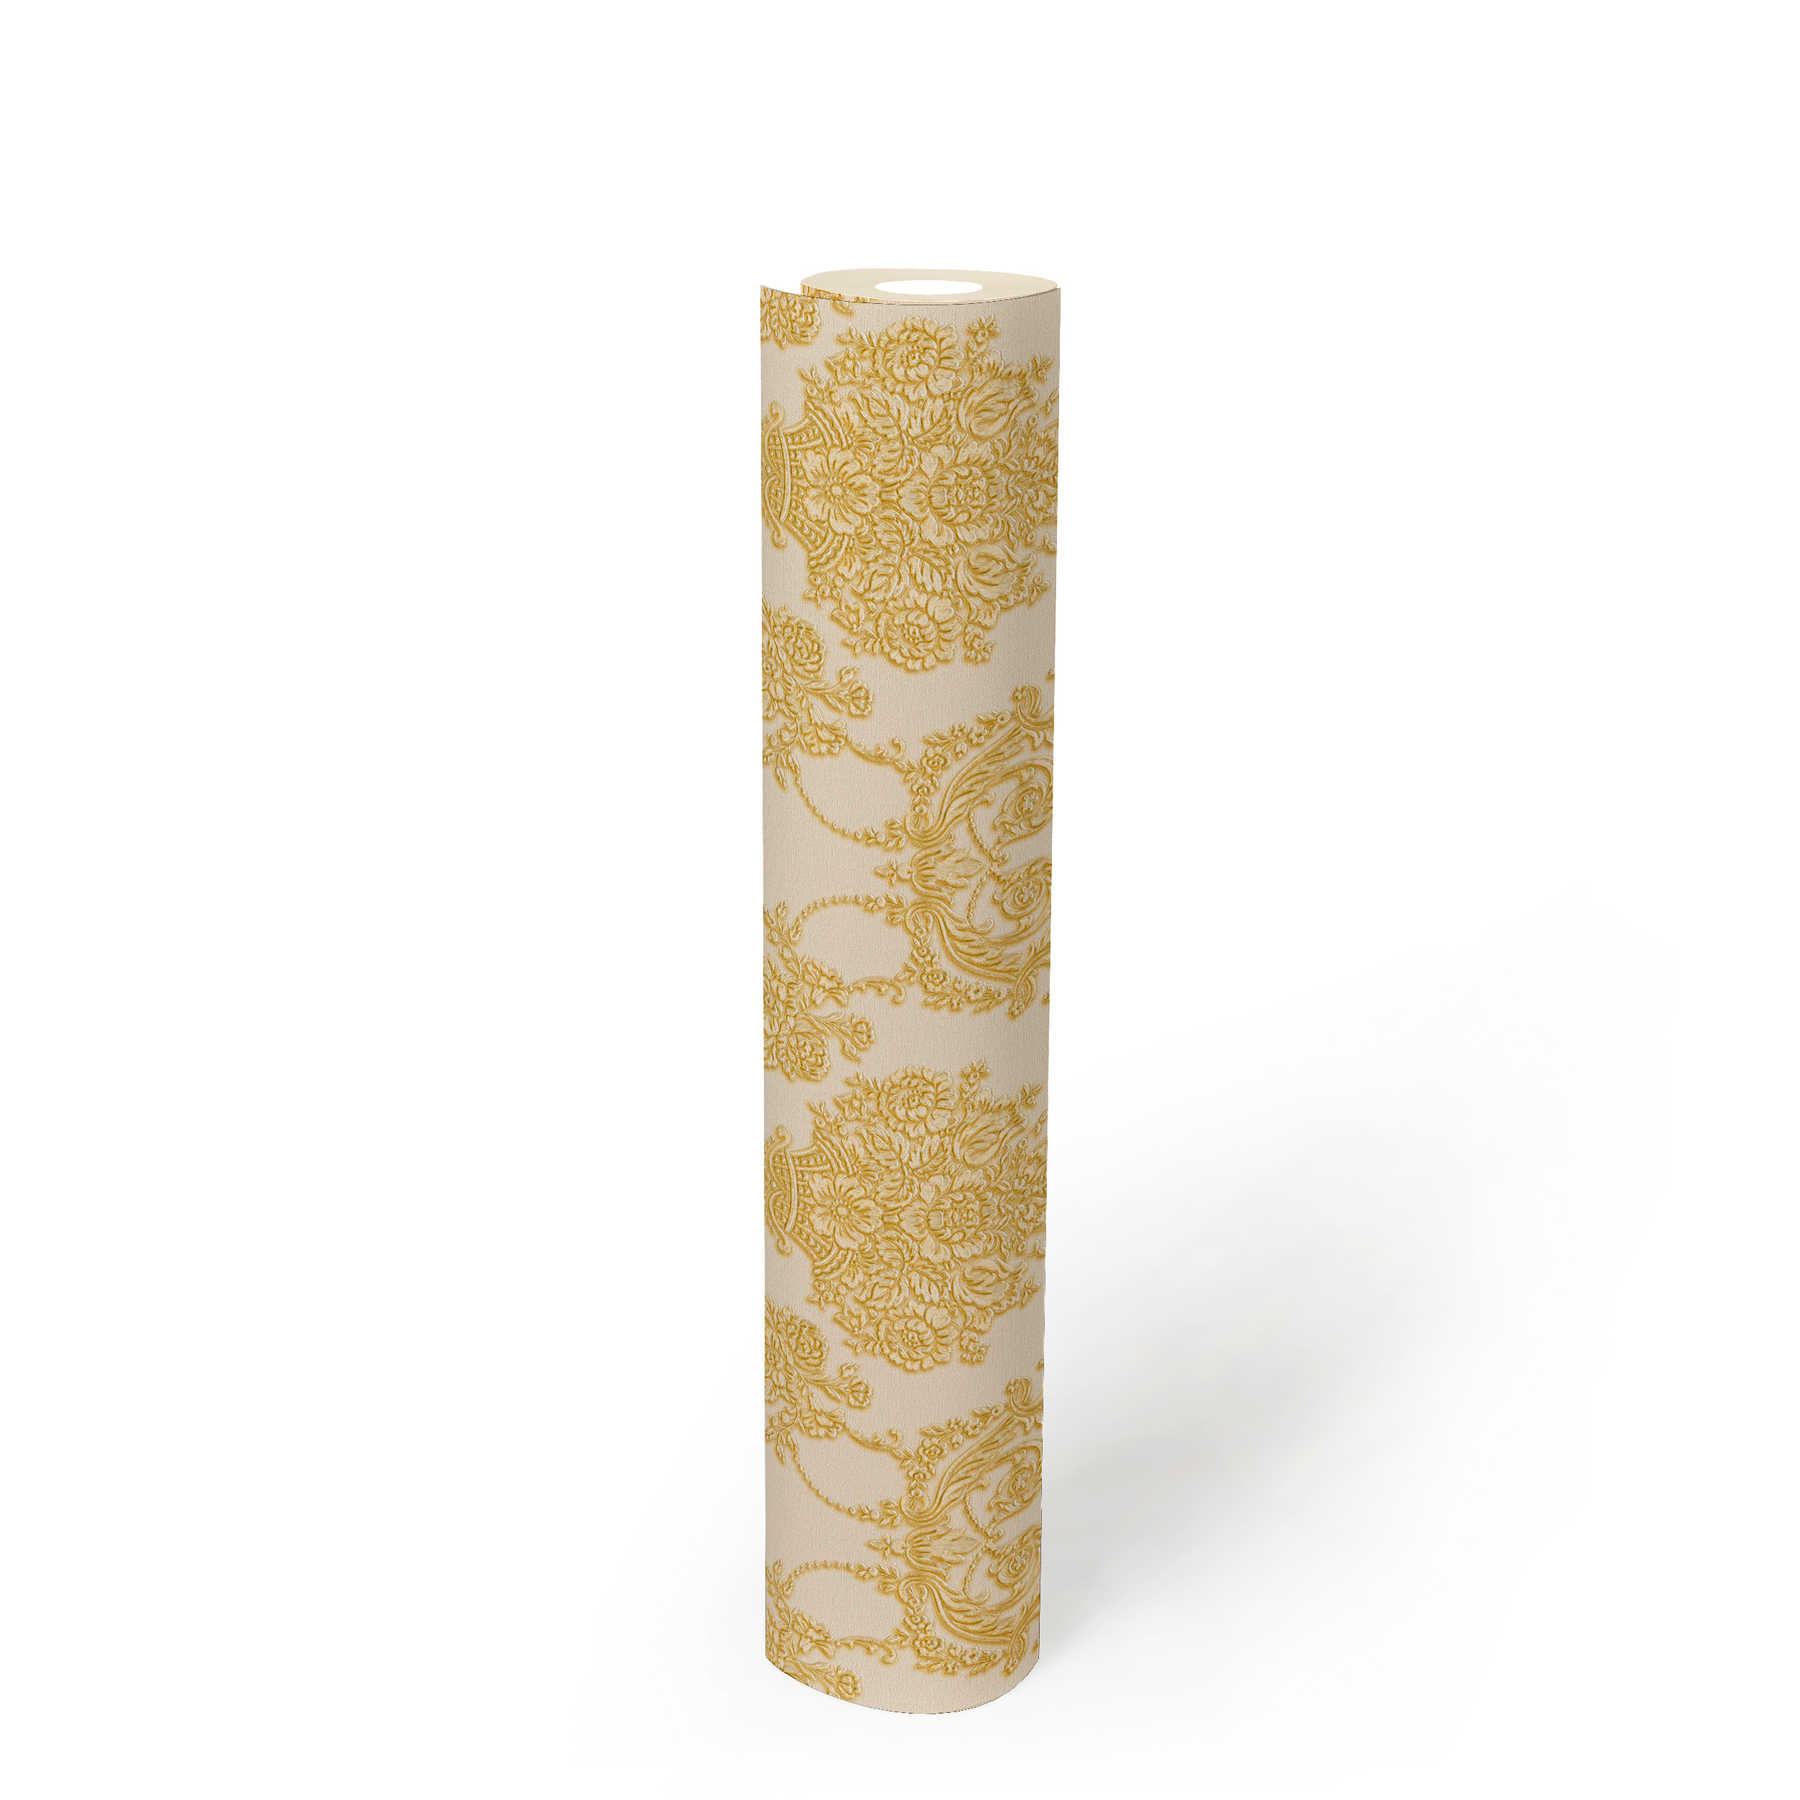             Papier peint baroque doré à motifs floraux - crème, métallique
        